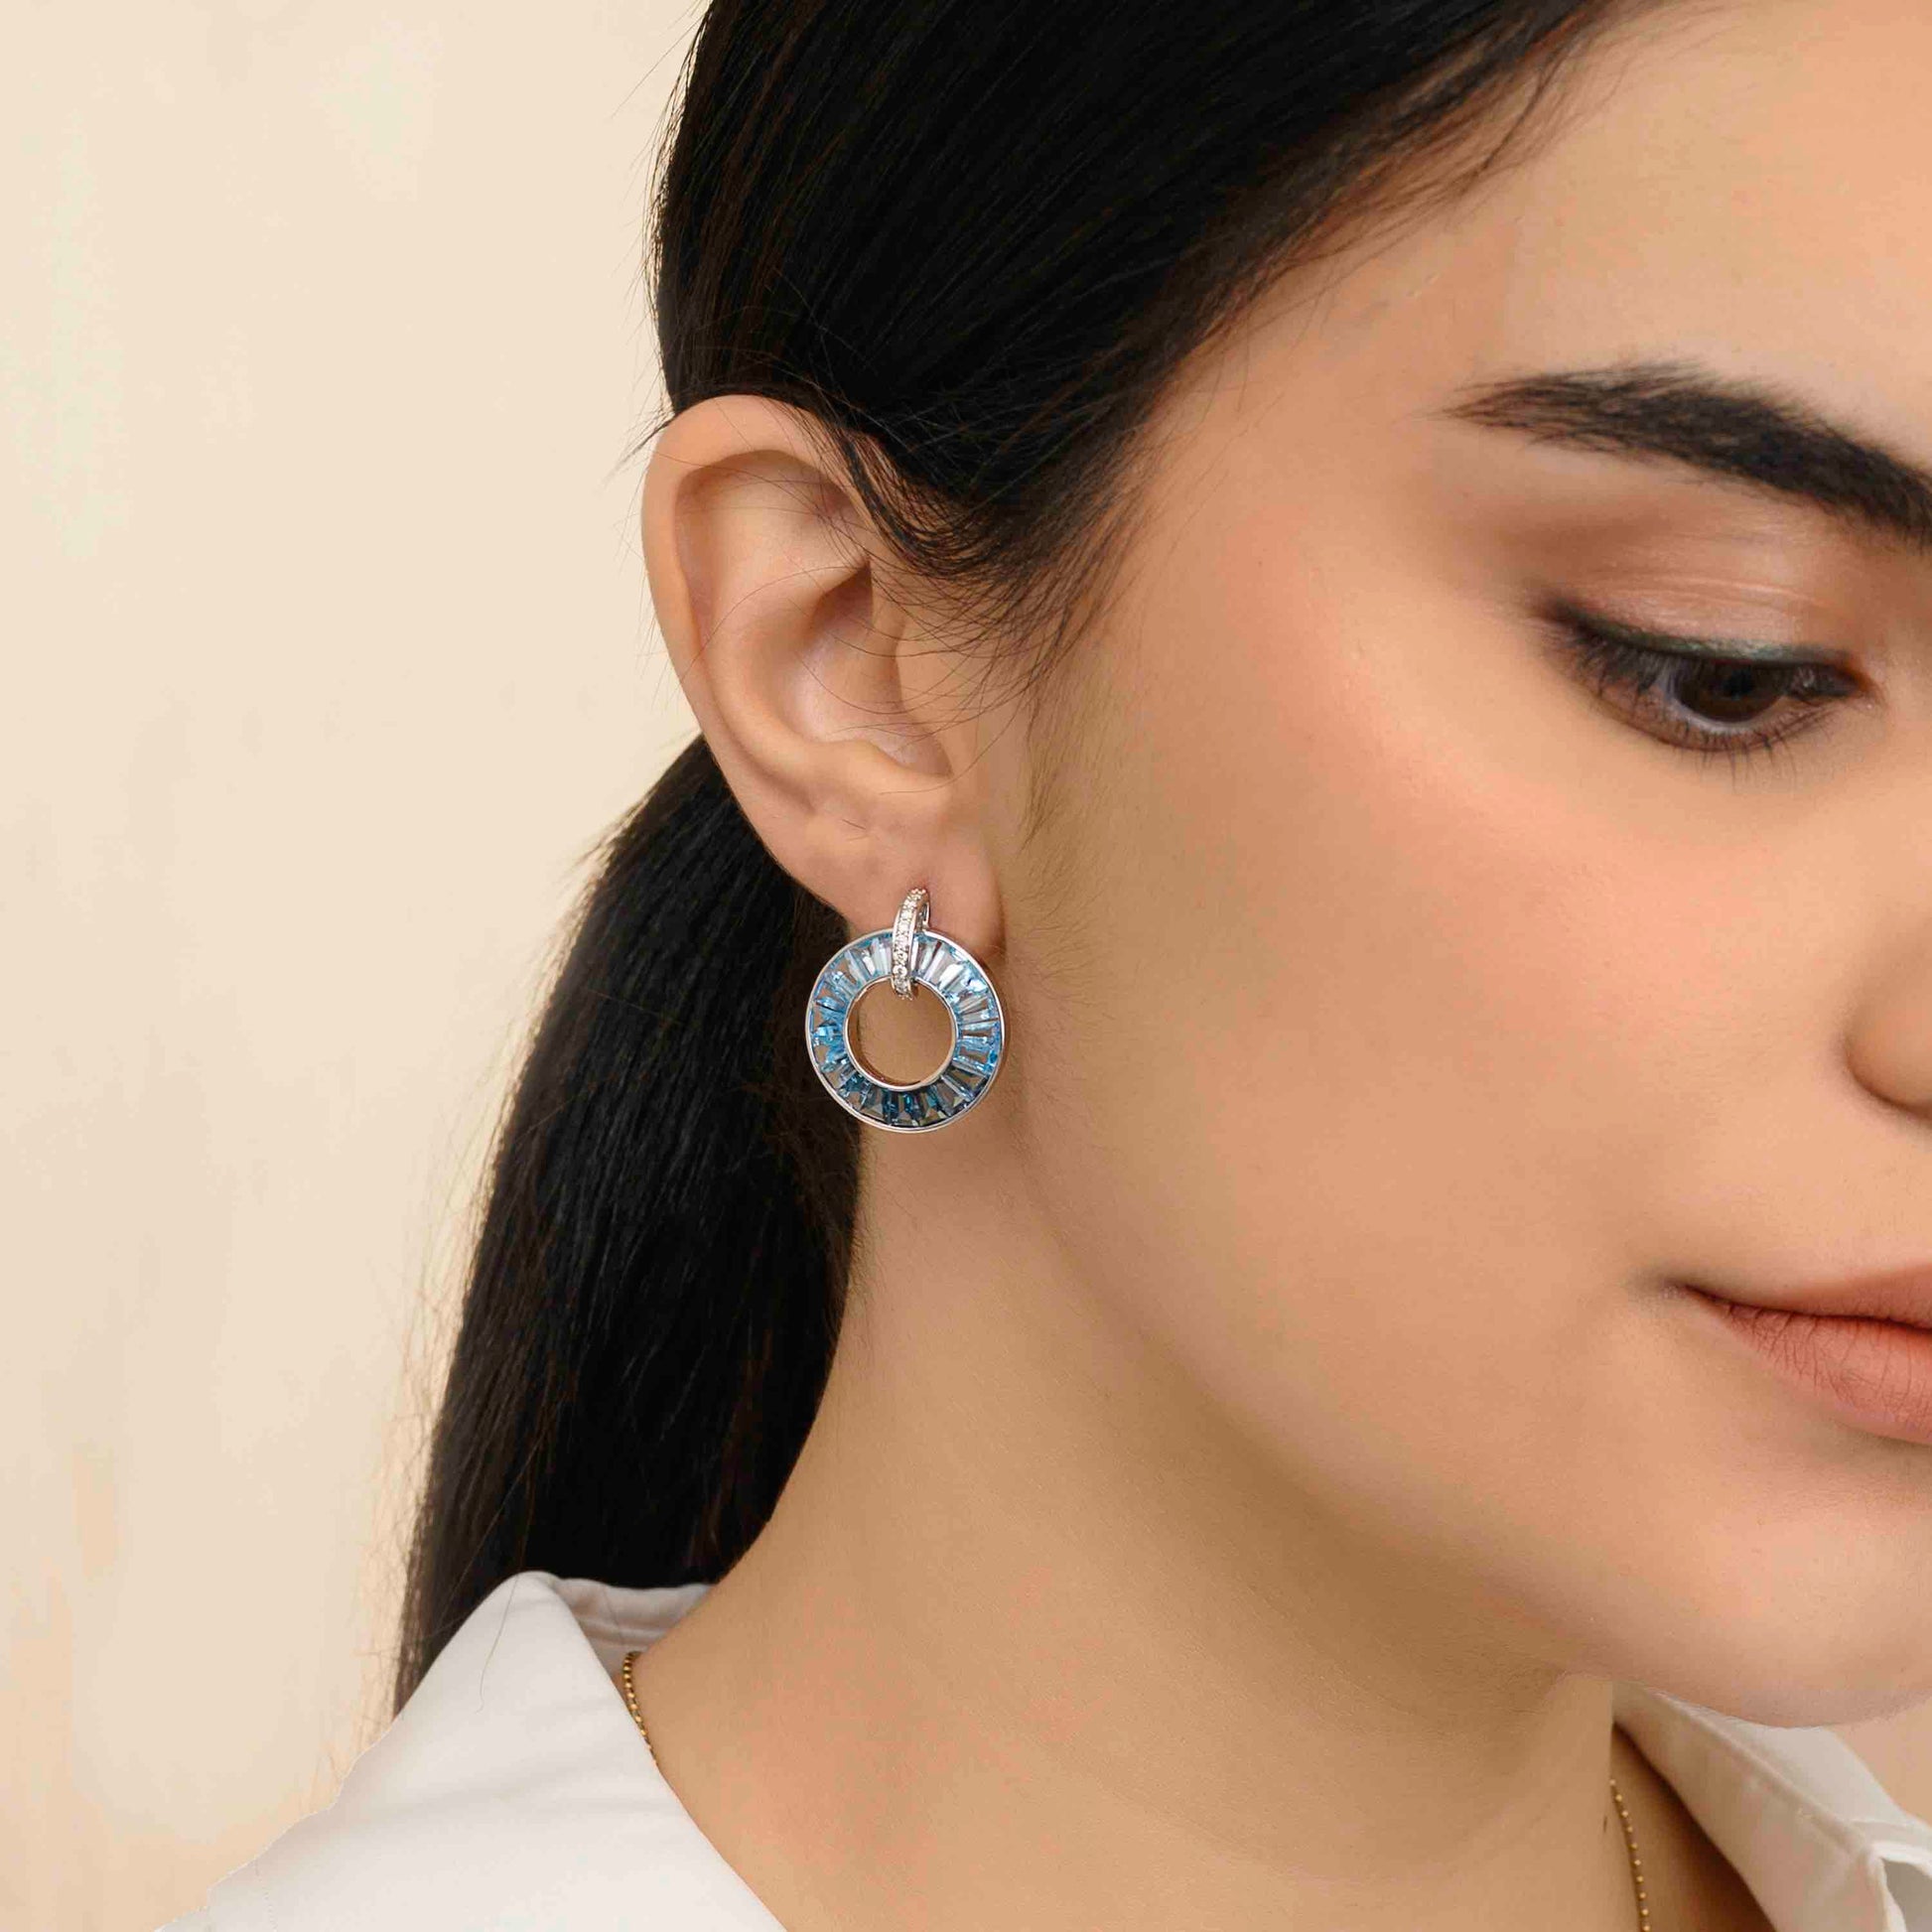 blue topaz earrings in white gold